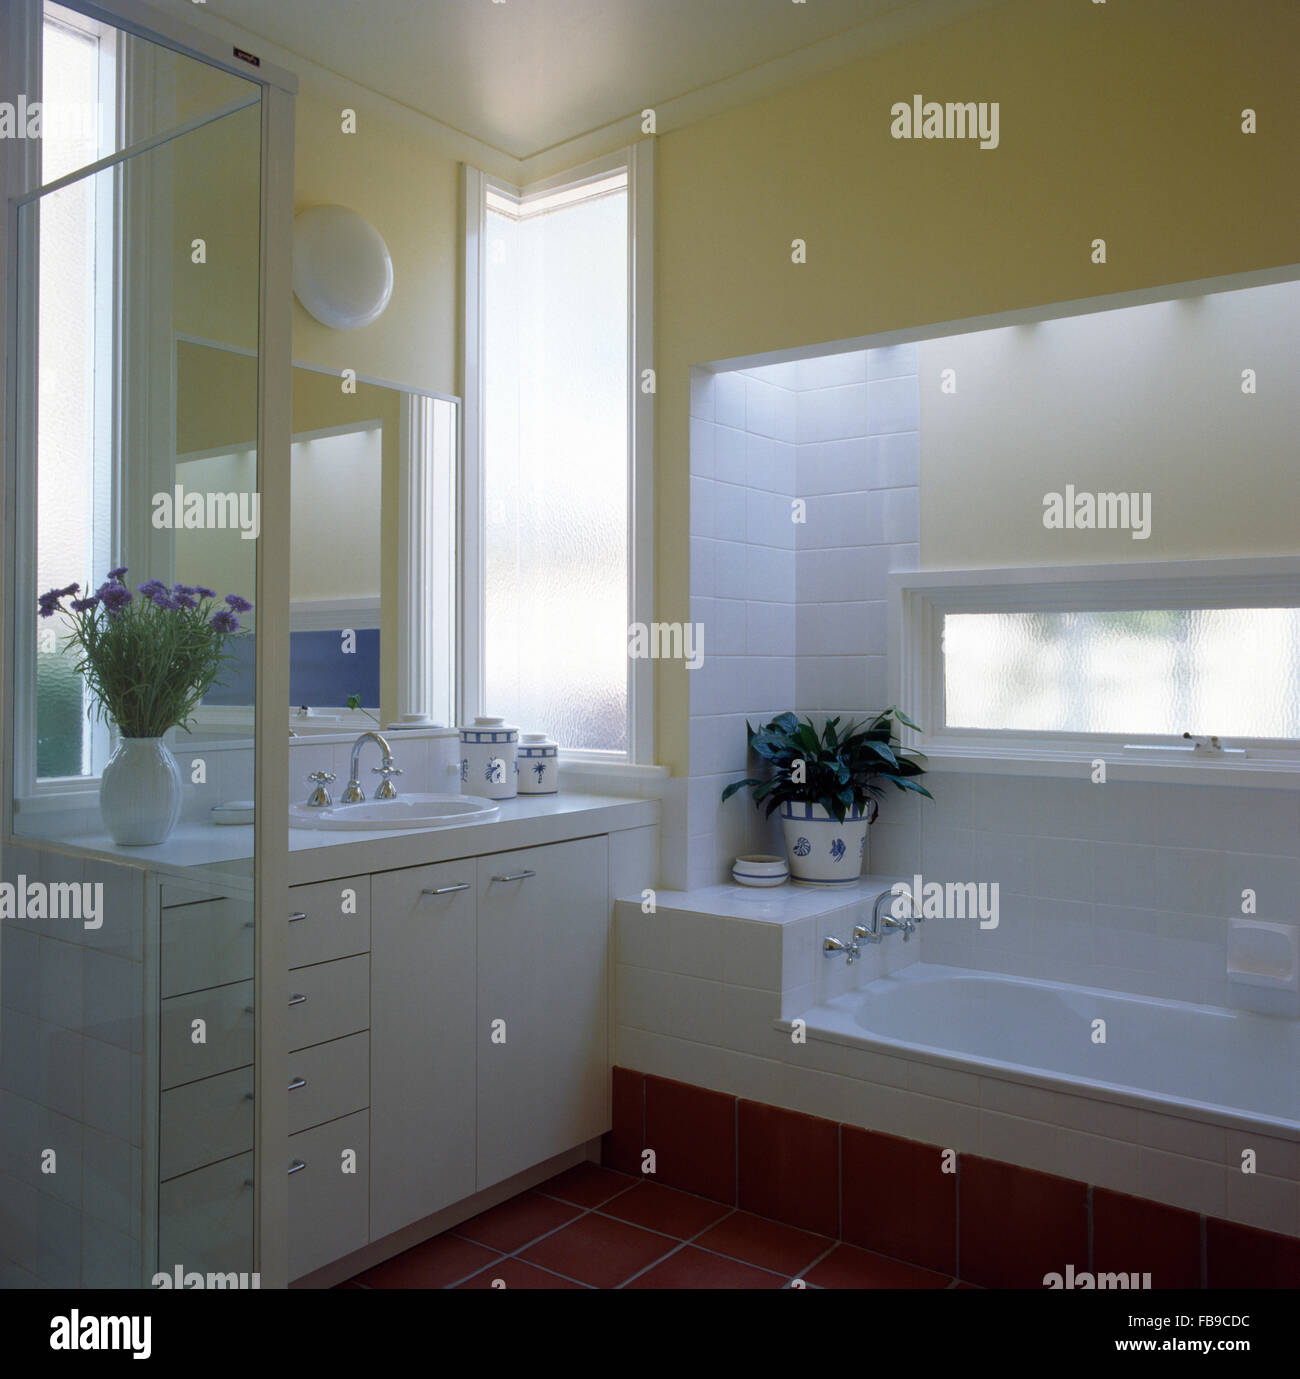 Bianco unità vanity e piastrelle in un giallo pallido degli anni novanta bagno con una finestra stretta al di sopra di un basso bagno attrezzato Foto Stock